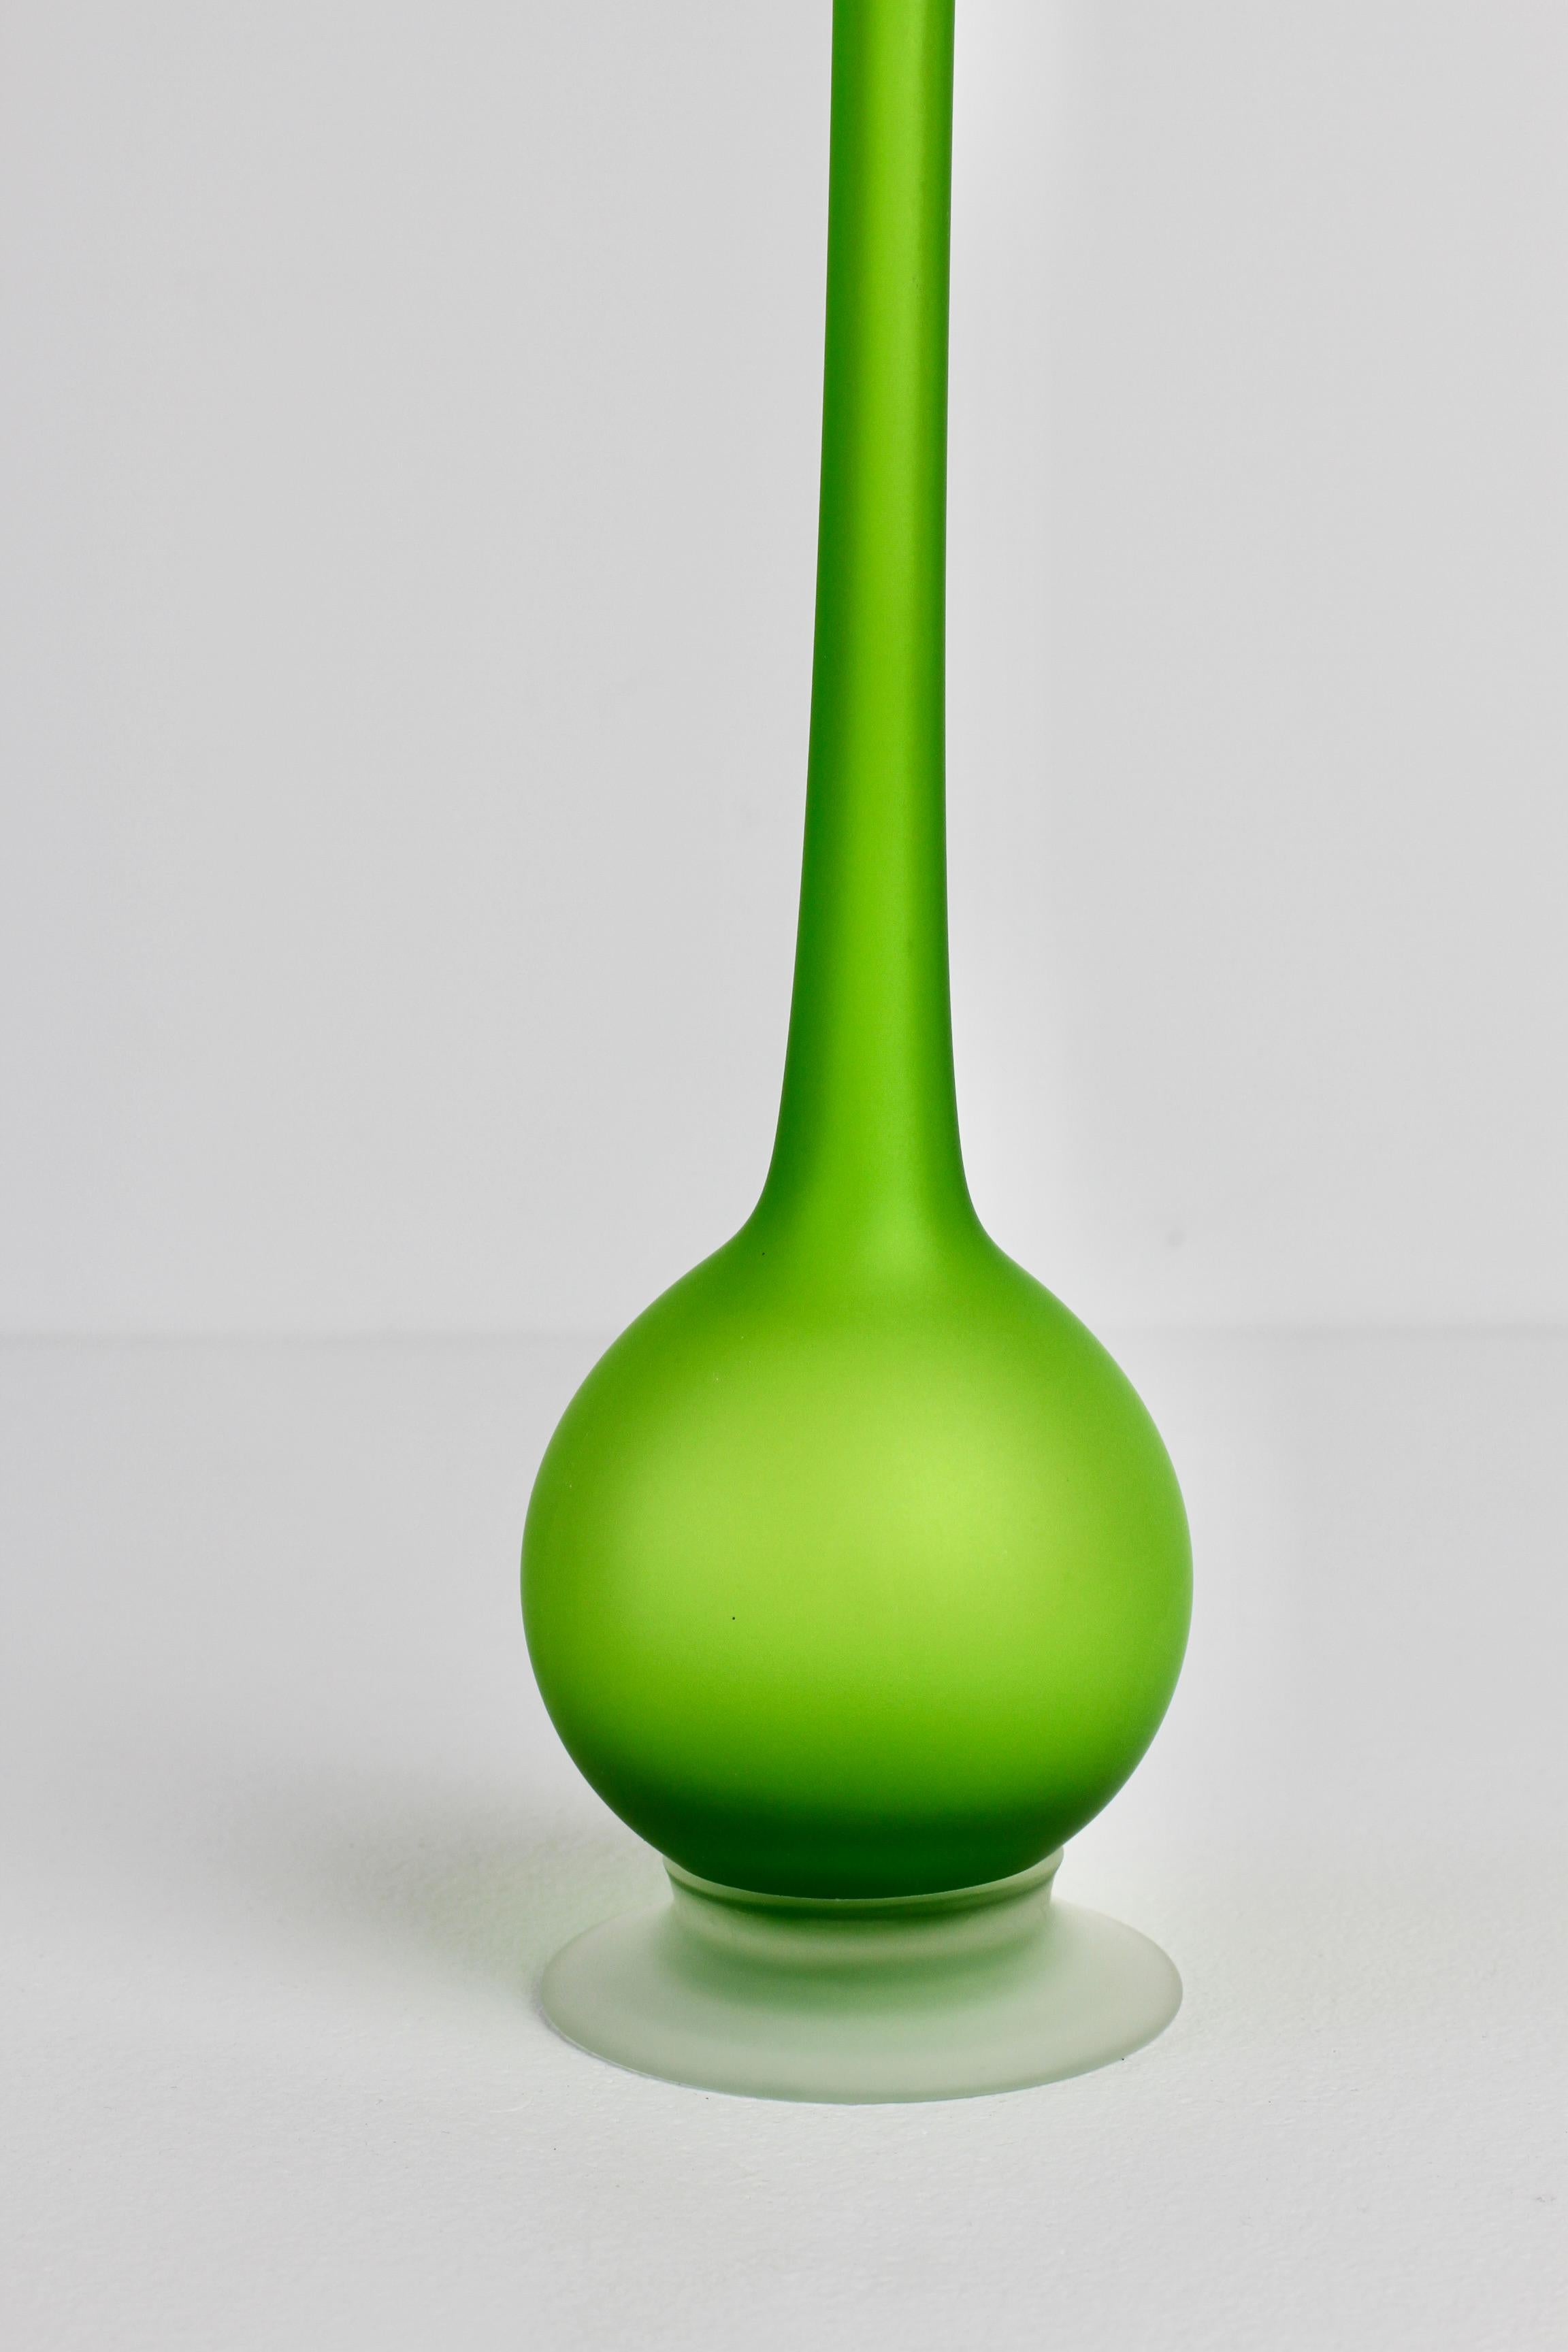 20th Century 1970s Colorful Green Carlo Moretti Satinato Italian Murano Glass Pencil Vase For Sale